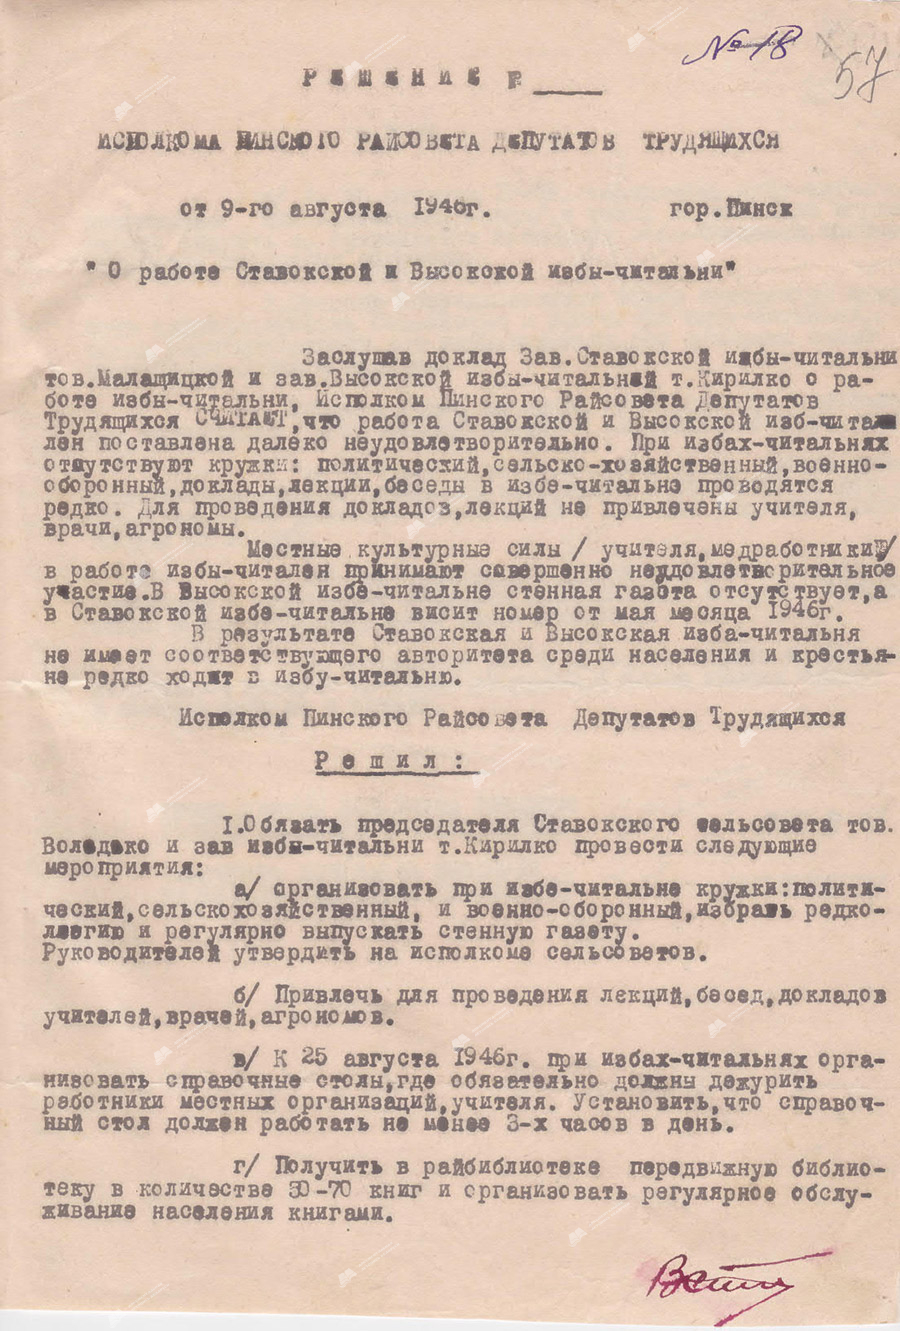 Beschluss des Exekutivkomitees des Regionalrats der Arbeiterdeputierten «Über die Arbeit der Lesehütten Stavokskaya und Vysokskaya»-стр. 0